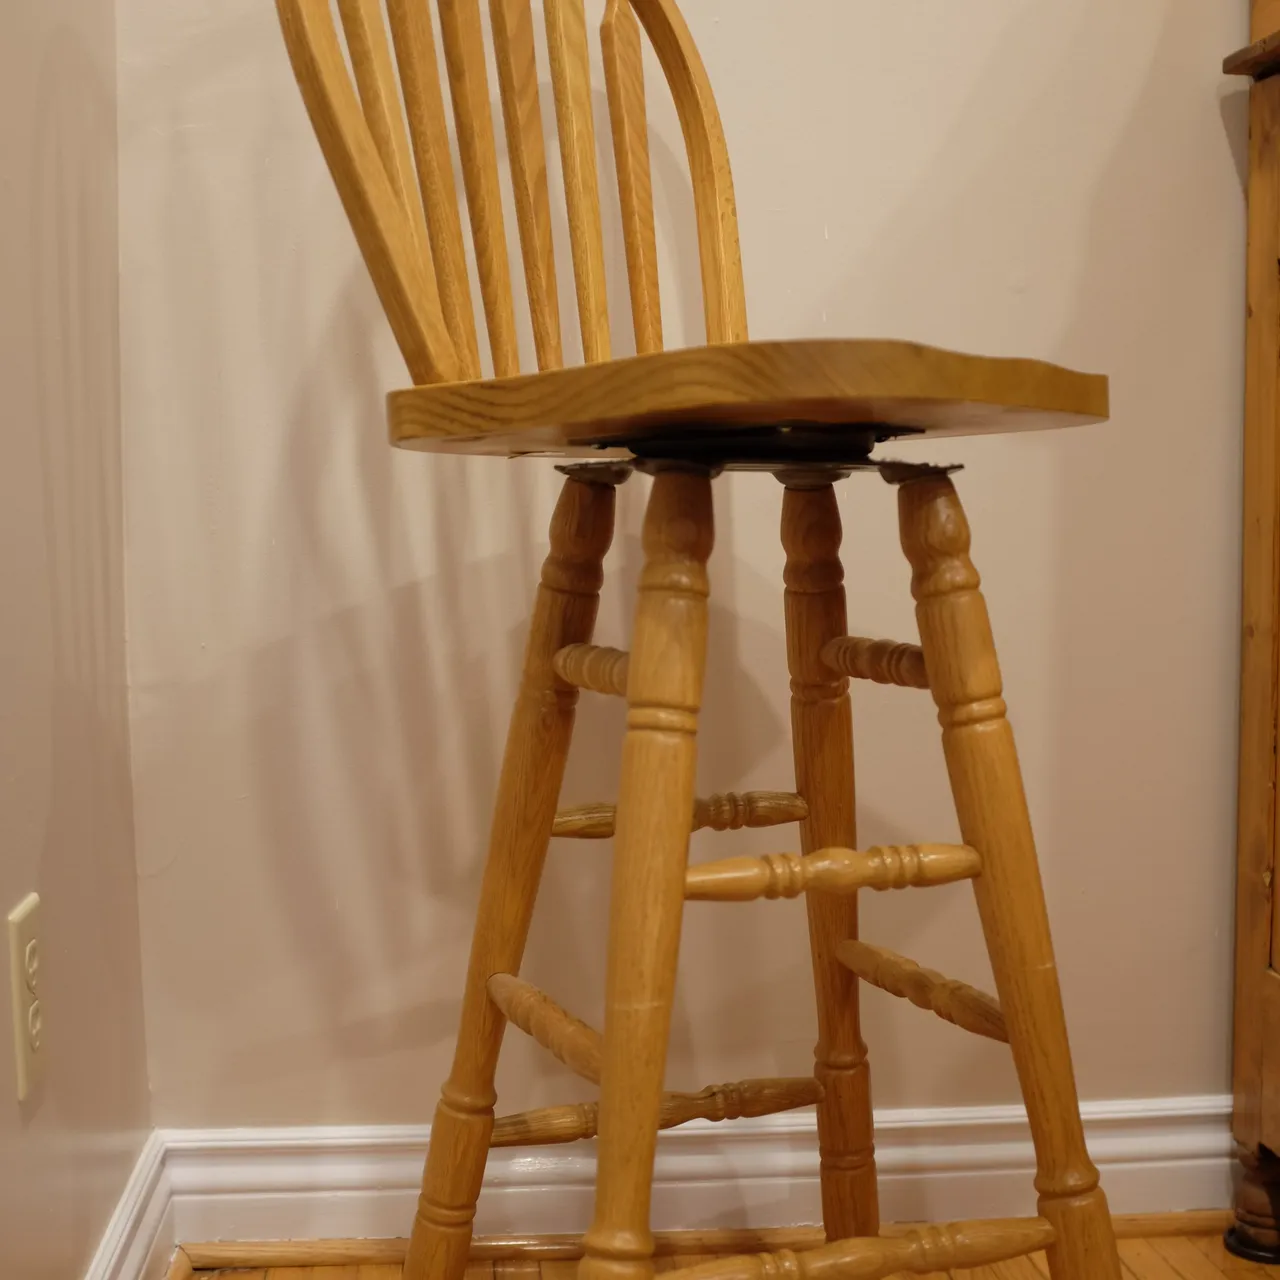 Bar-stool style chair photo 4